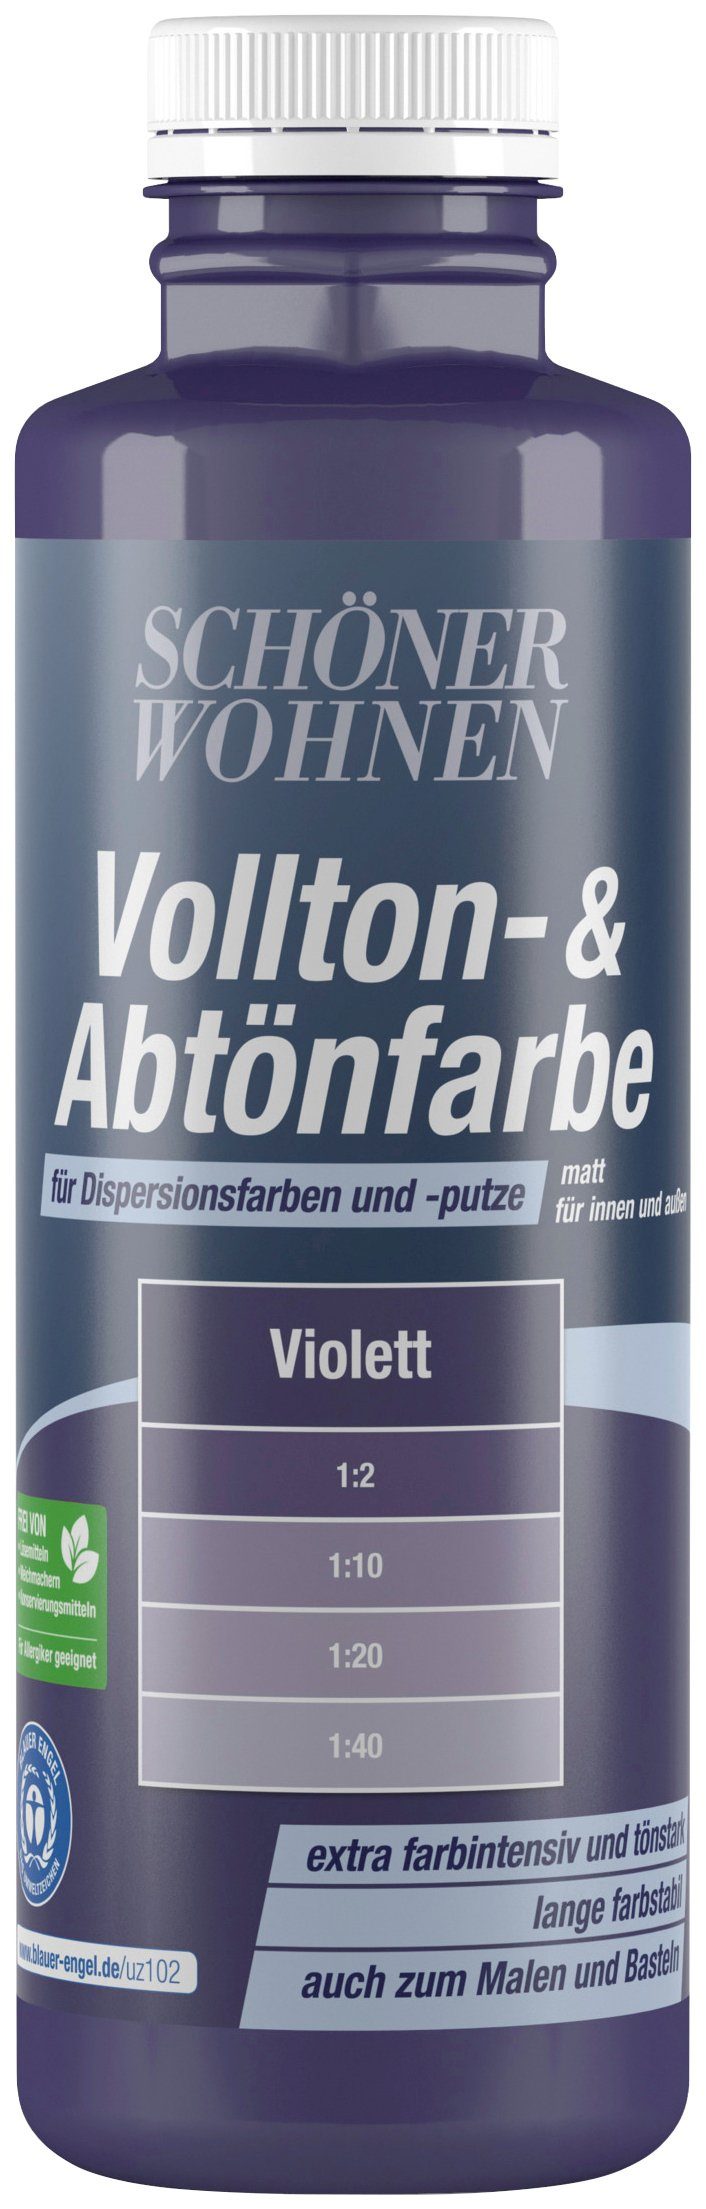 SCHÖNER WOHNEN FARBE Vollton- und Abtönfarbe Vollton- & Abtönfarbe, zum Abtönen von Dispersionsfarben und -putzen, farbintensiv